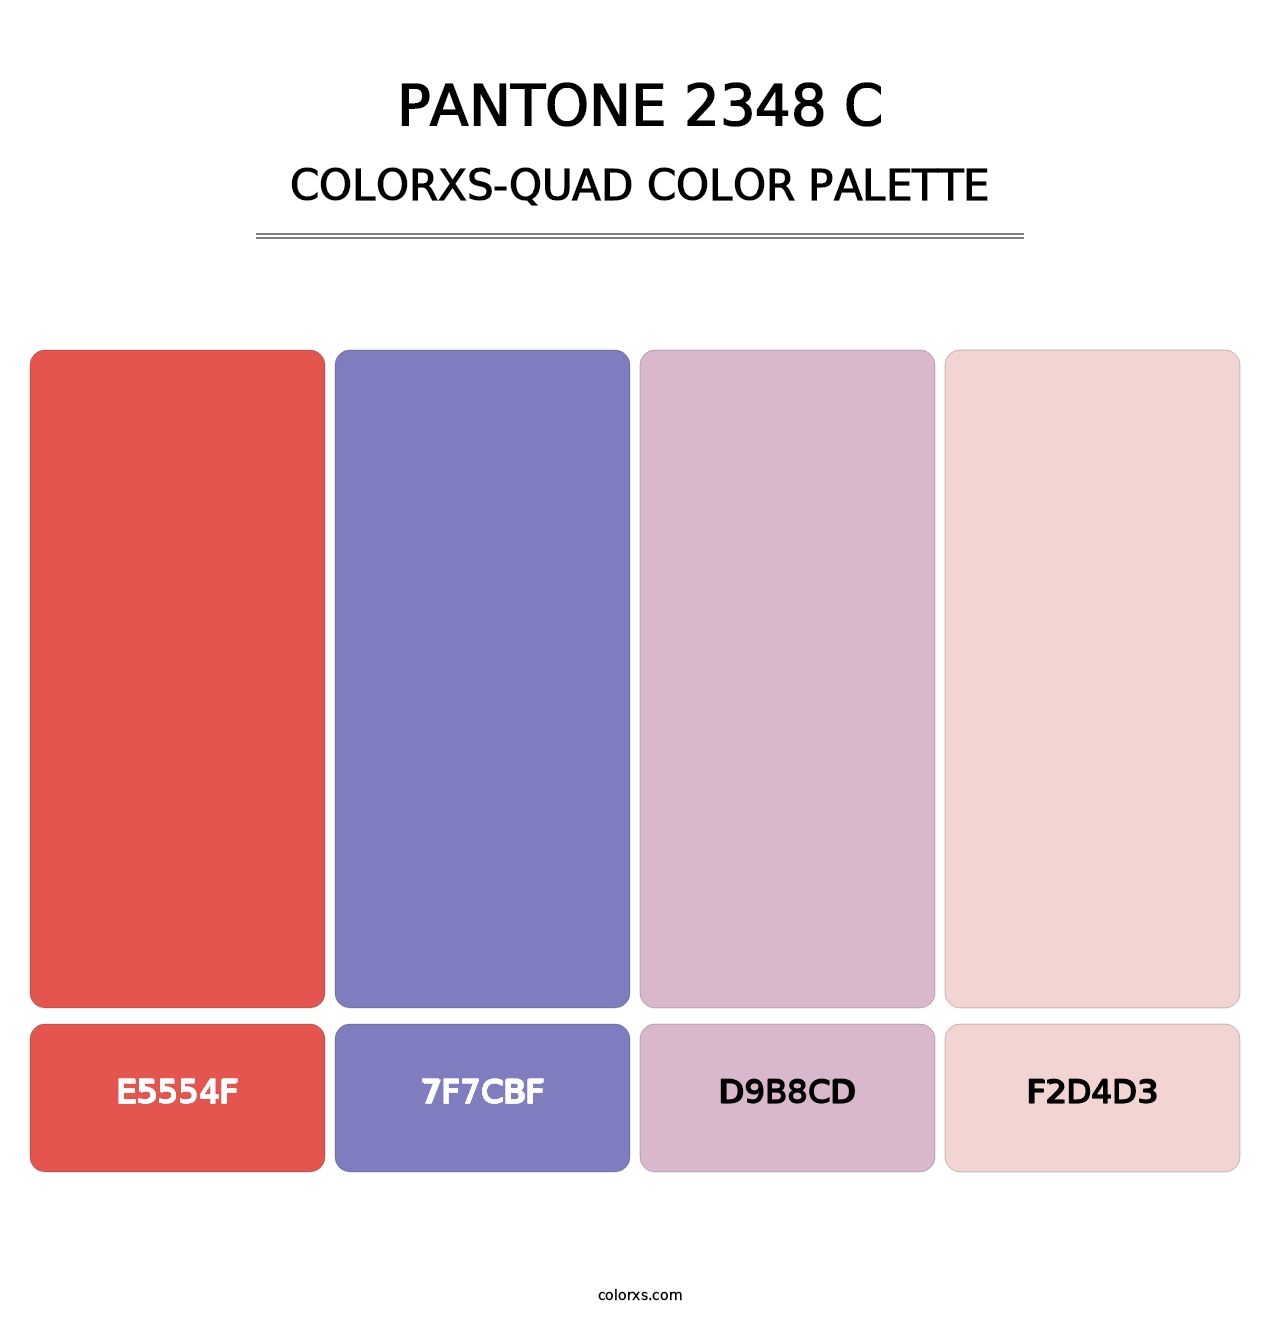 PANTONE 2348 C - Colorxs Quad Palette